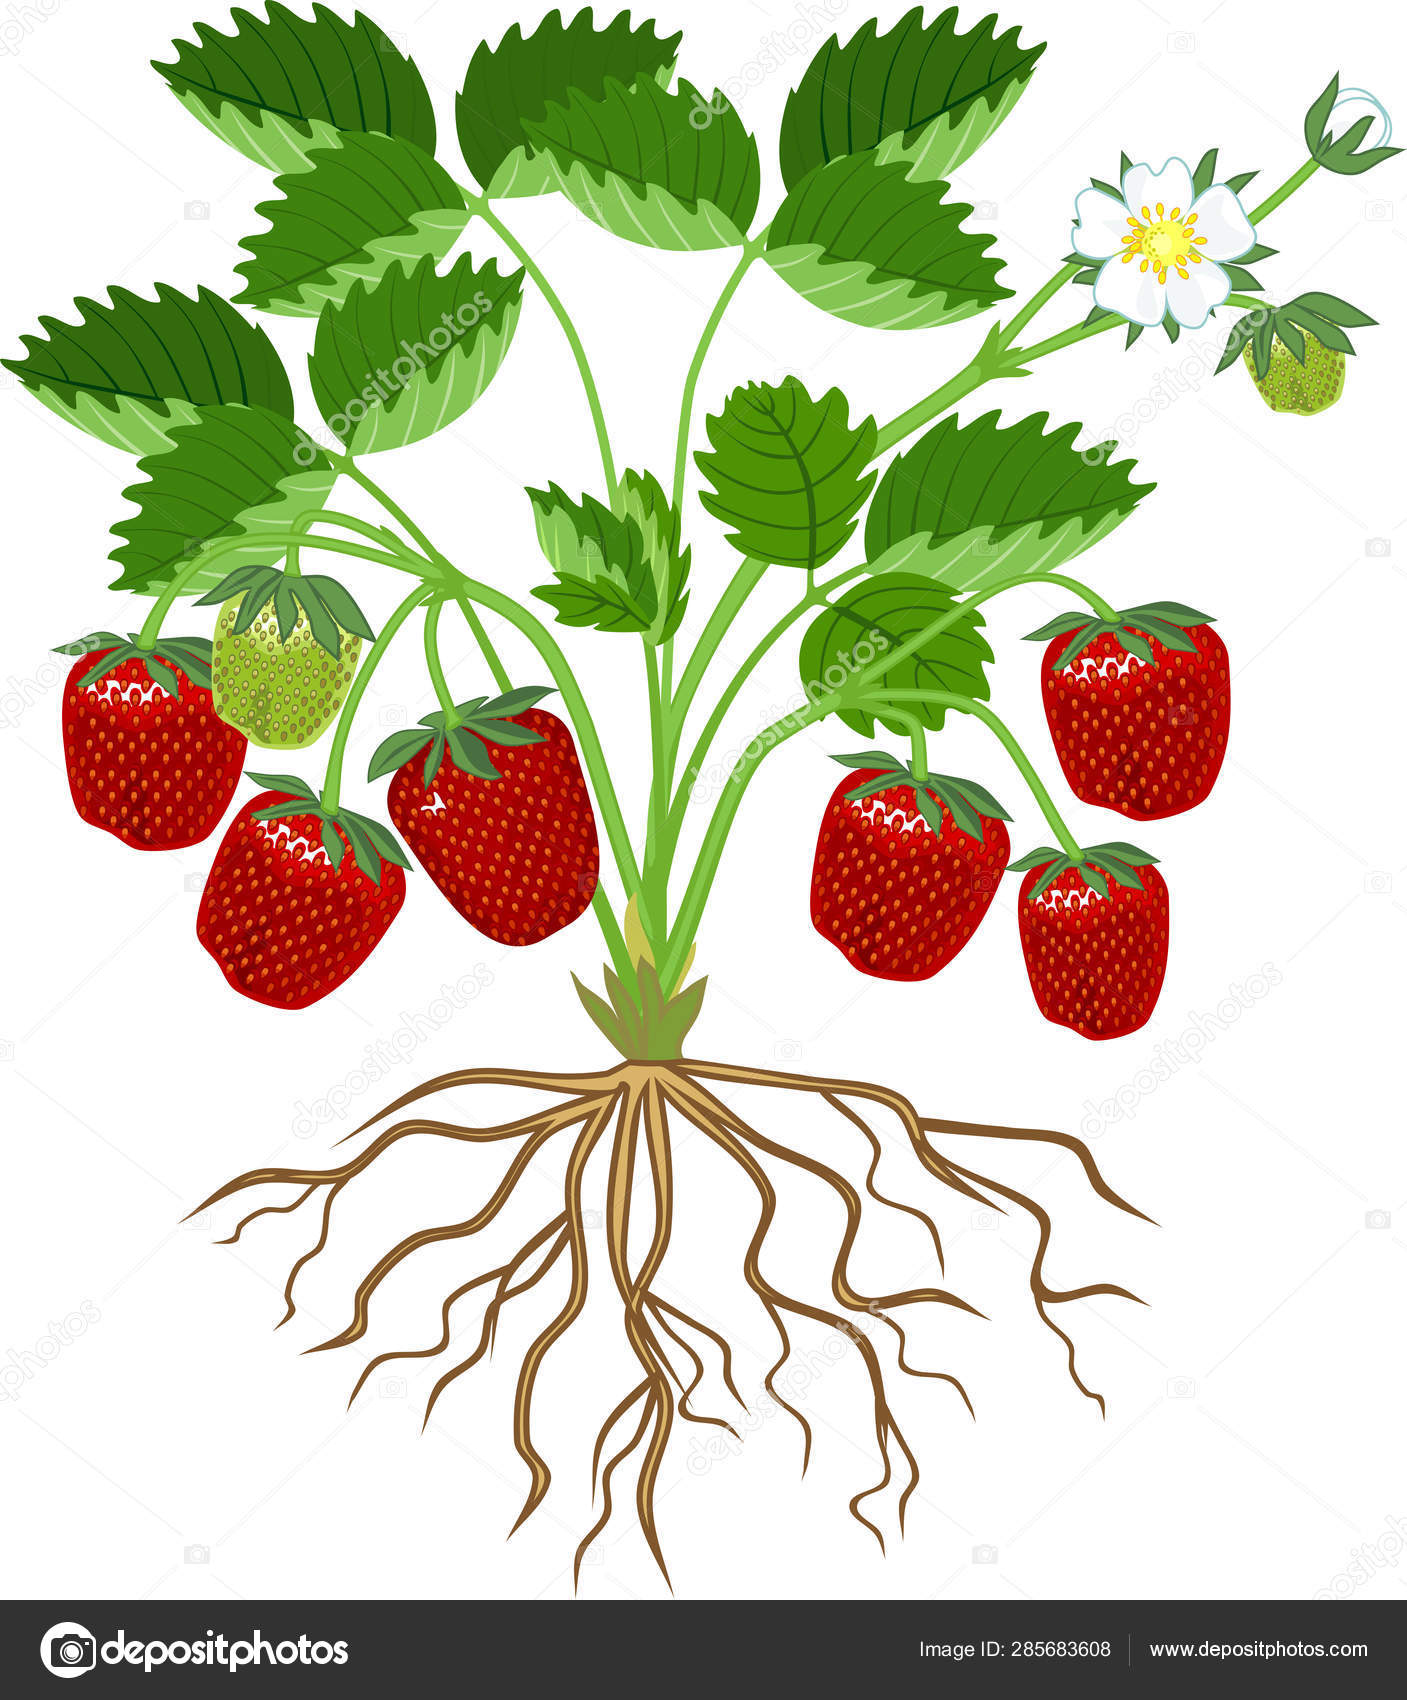 strawberry plant roots stockvektoren, lizenzfreie illustrationen